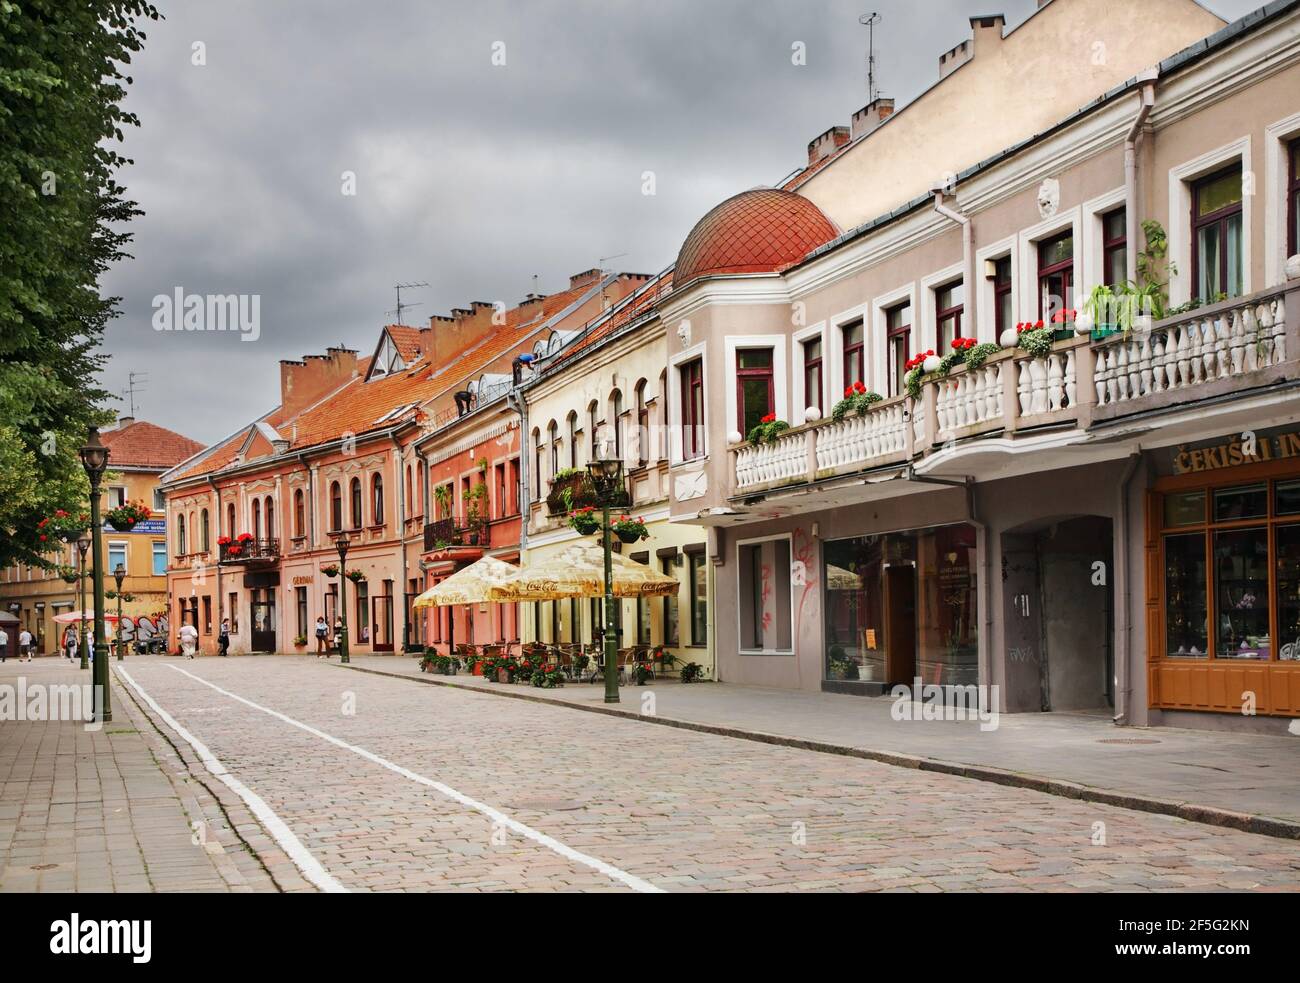 Vilniaus street in Kaunas. Lithuania Stock Photo